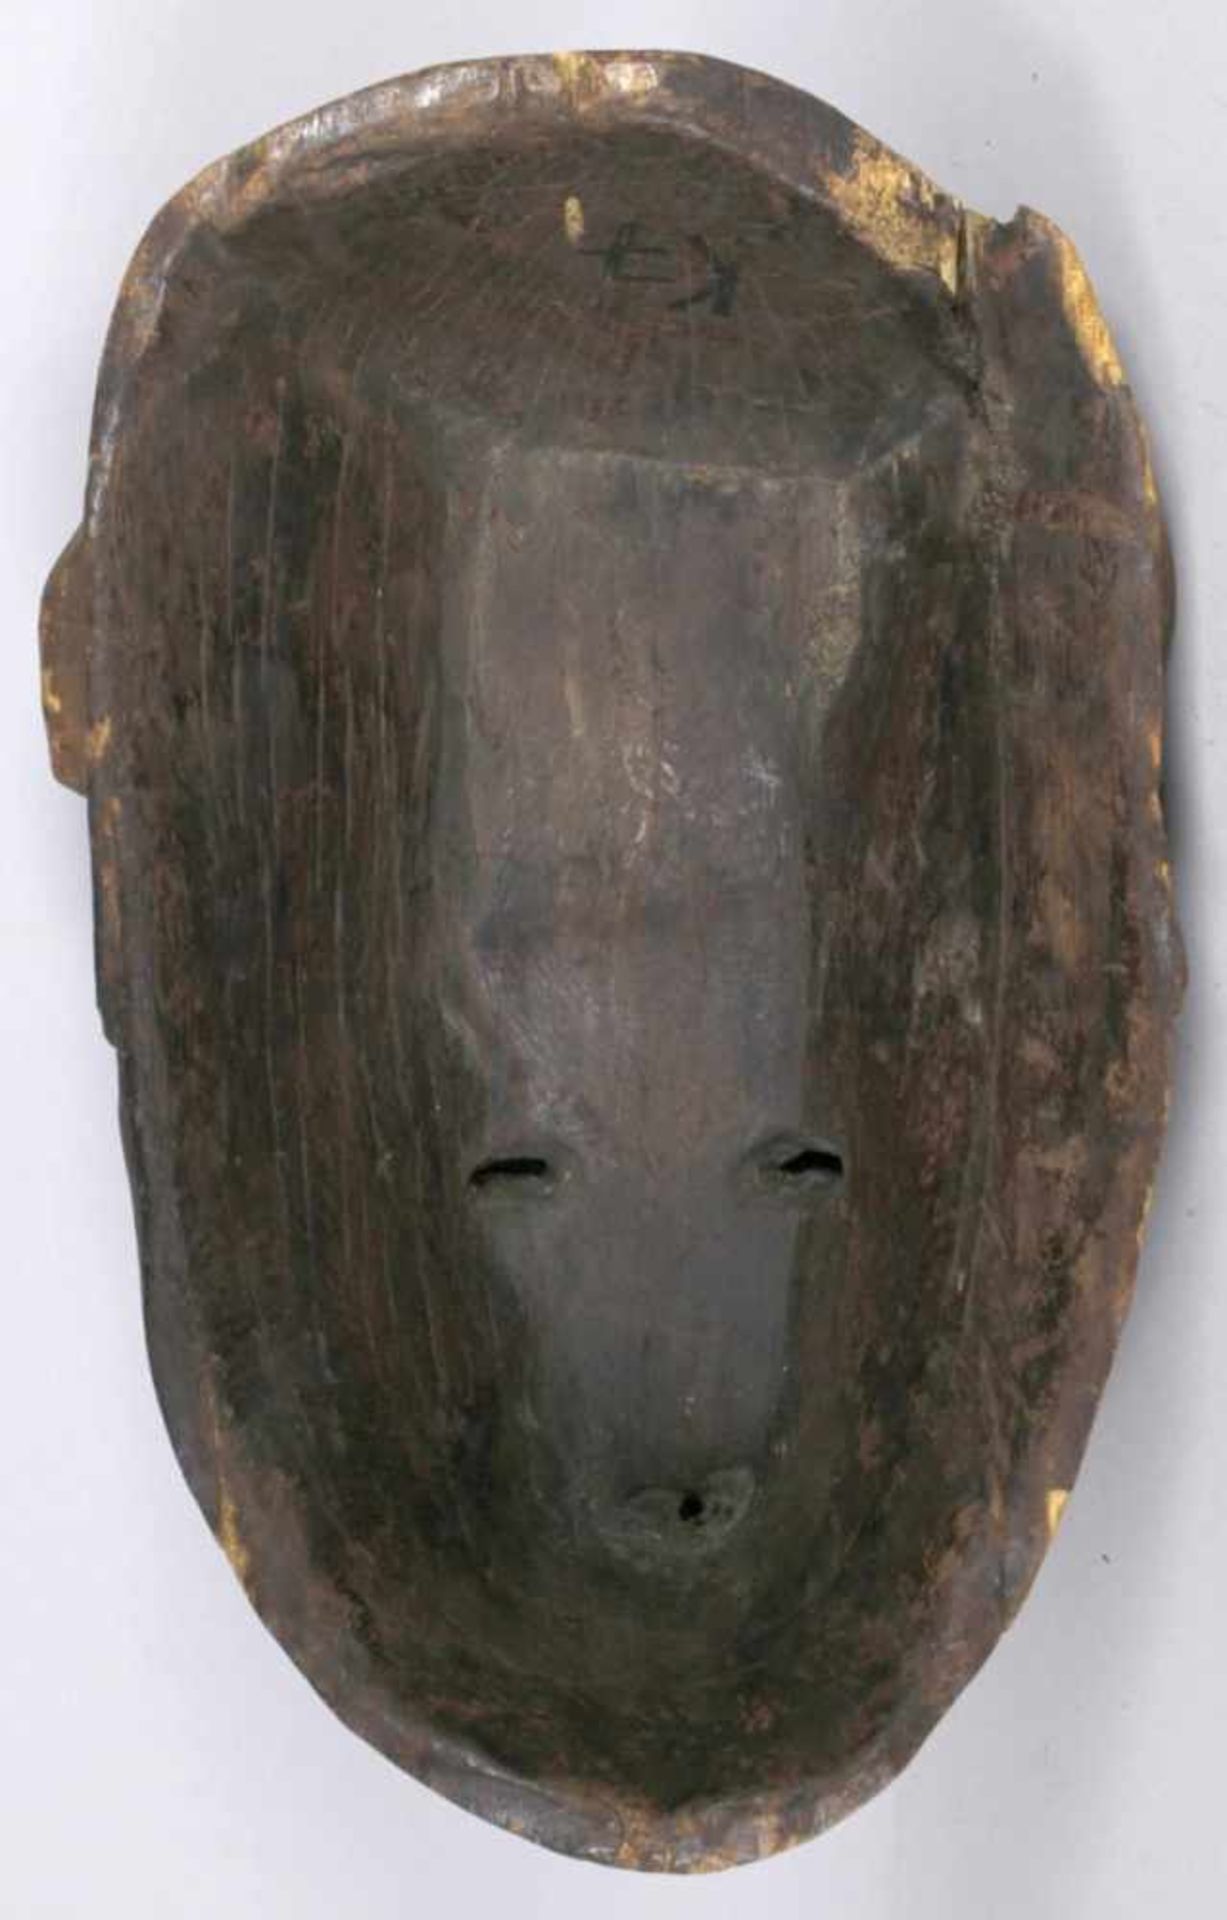 Hand-Maske, Punu, Gabun, plastisches Gesicht mit wulstiger Narbentatauierung auf Stirn,Holz, - Bild 3 aus 4